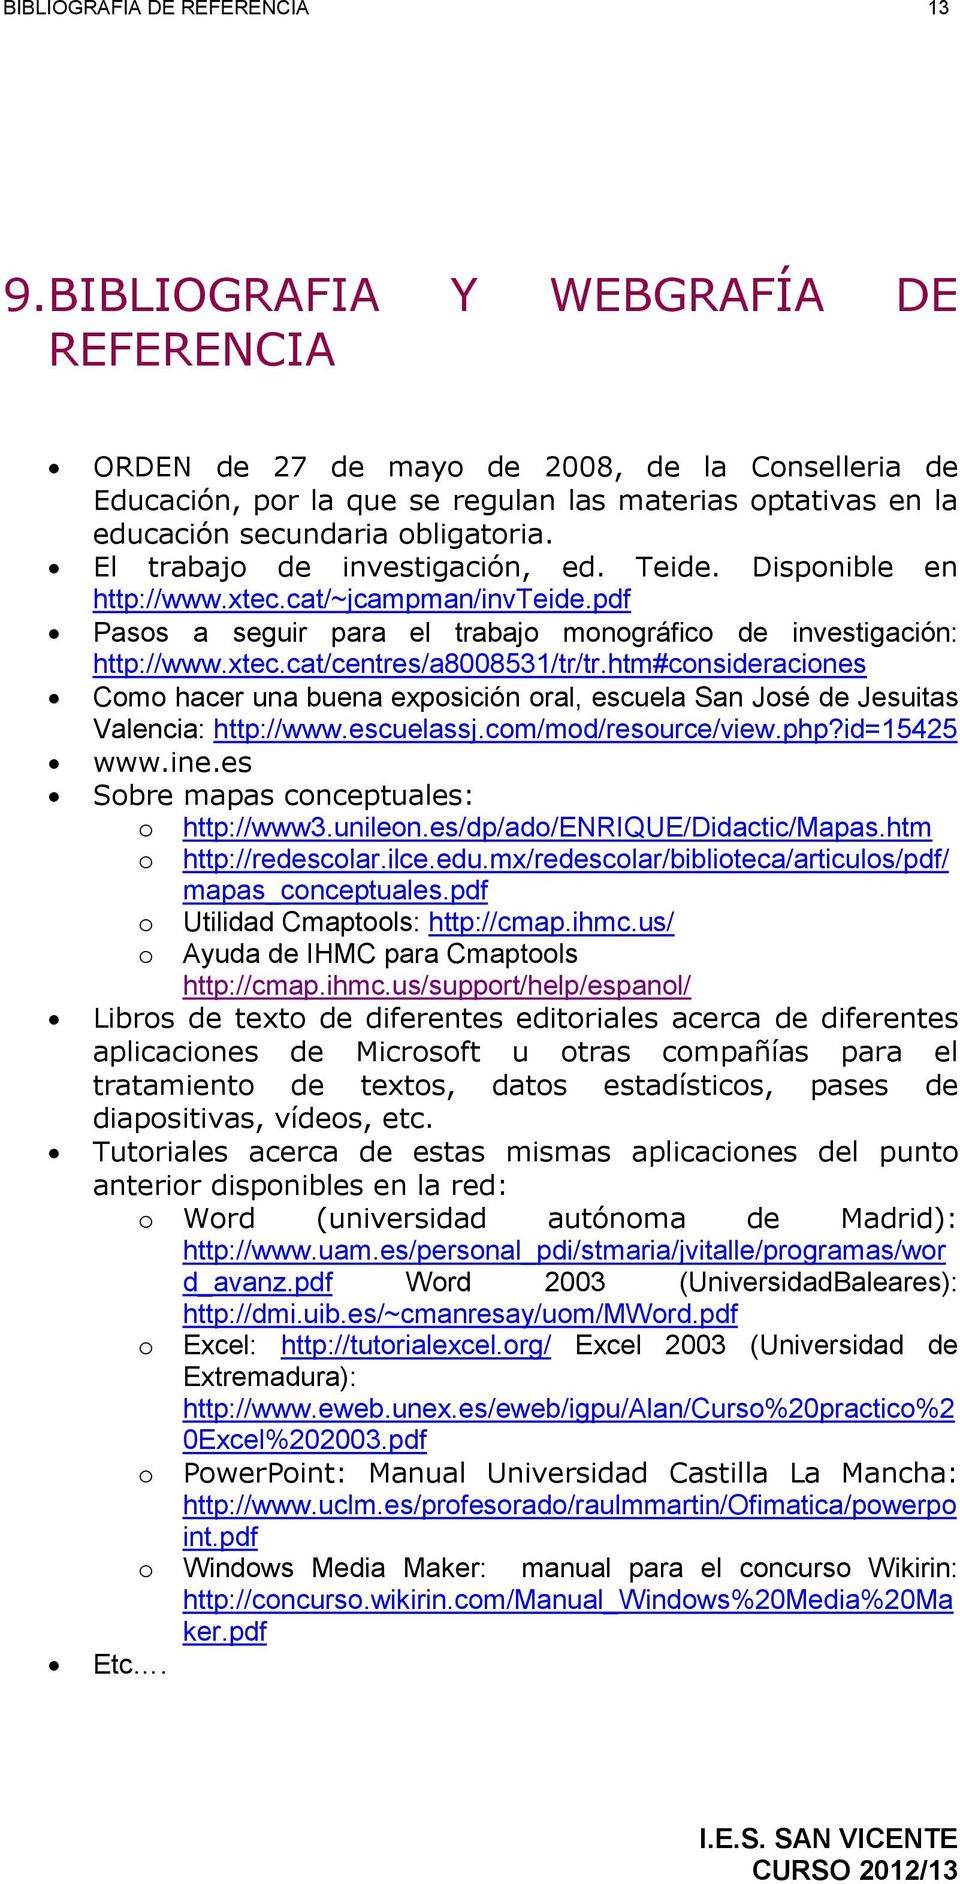 El trabajo de investigación, ed. Teide. Disponible en http://www.xtec.cat/~jcampman/invteide.pdf Pasos a seguir para el trabajo monográfico de investigación: http://www.xtec.cat/centres/a8008531/tr/tr.